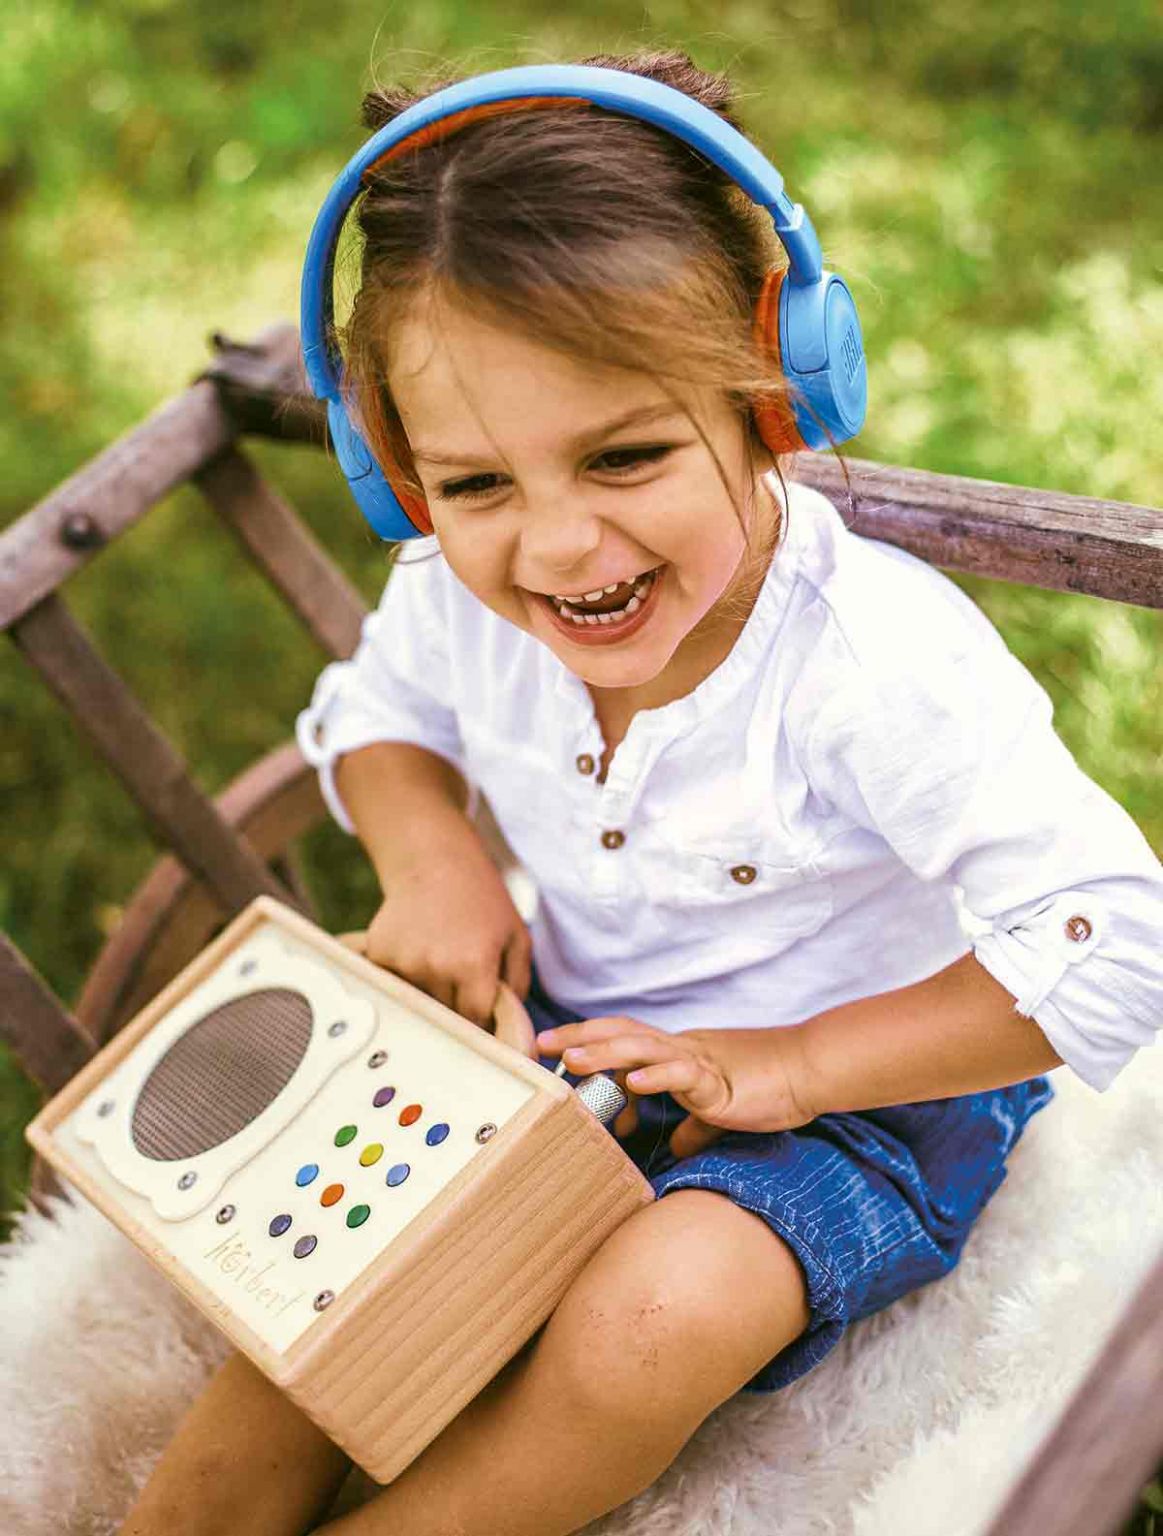 Plaisir absolu avec un casque Bluetooth connecté au lecteur mp3 pour enfant